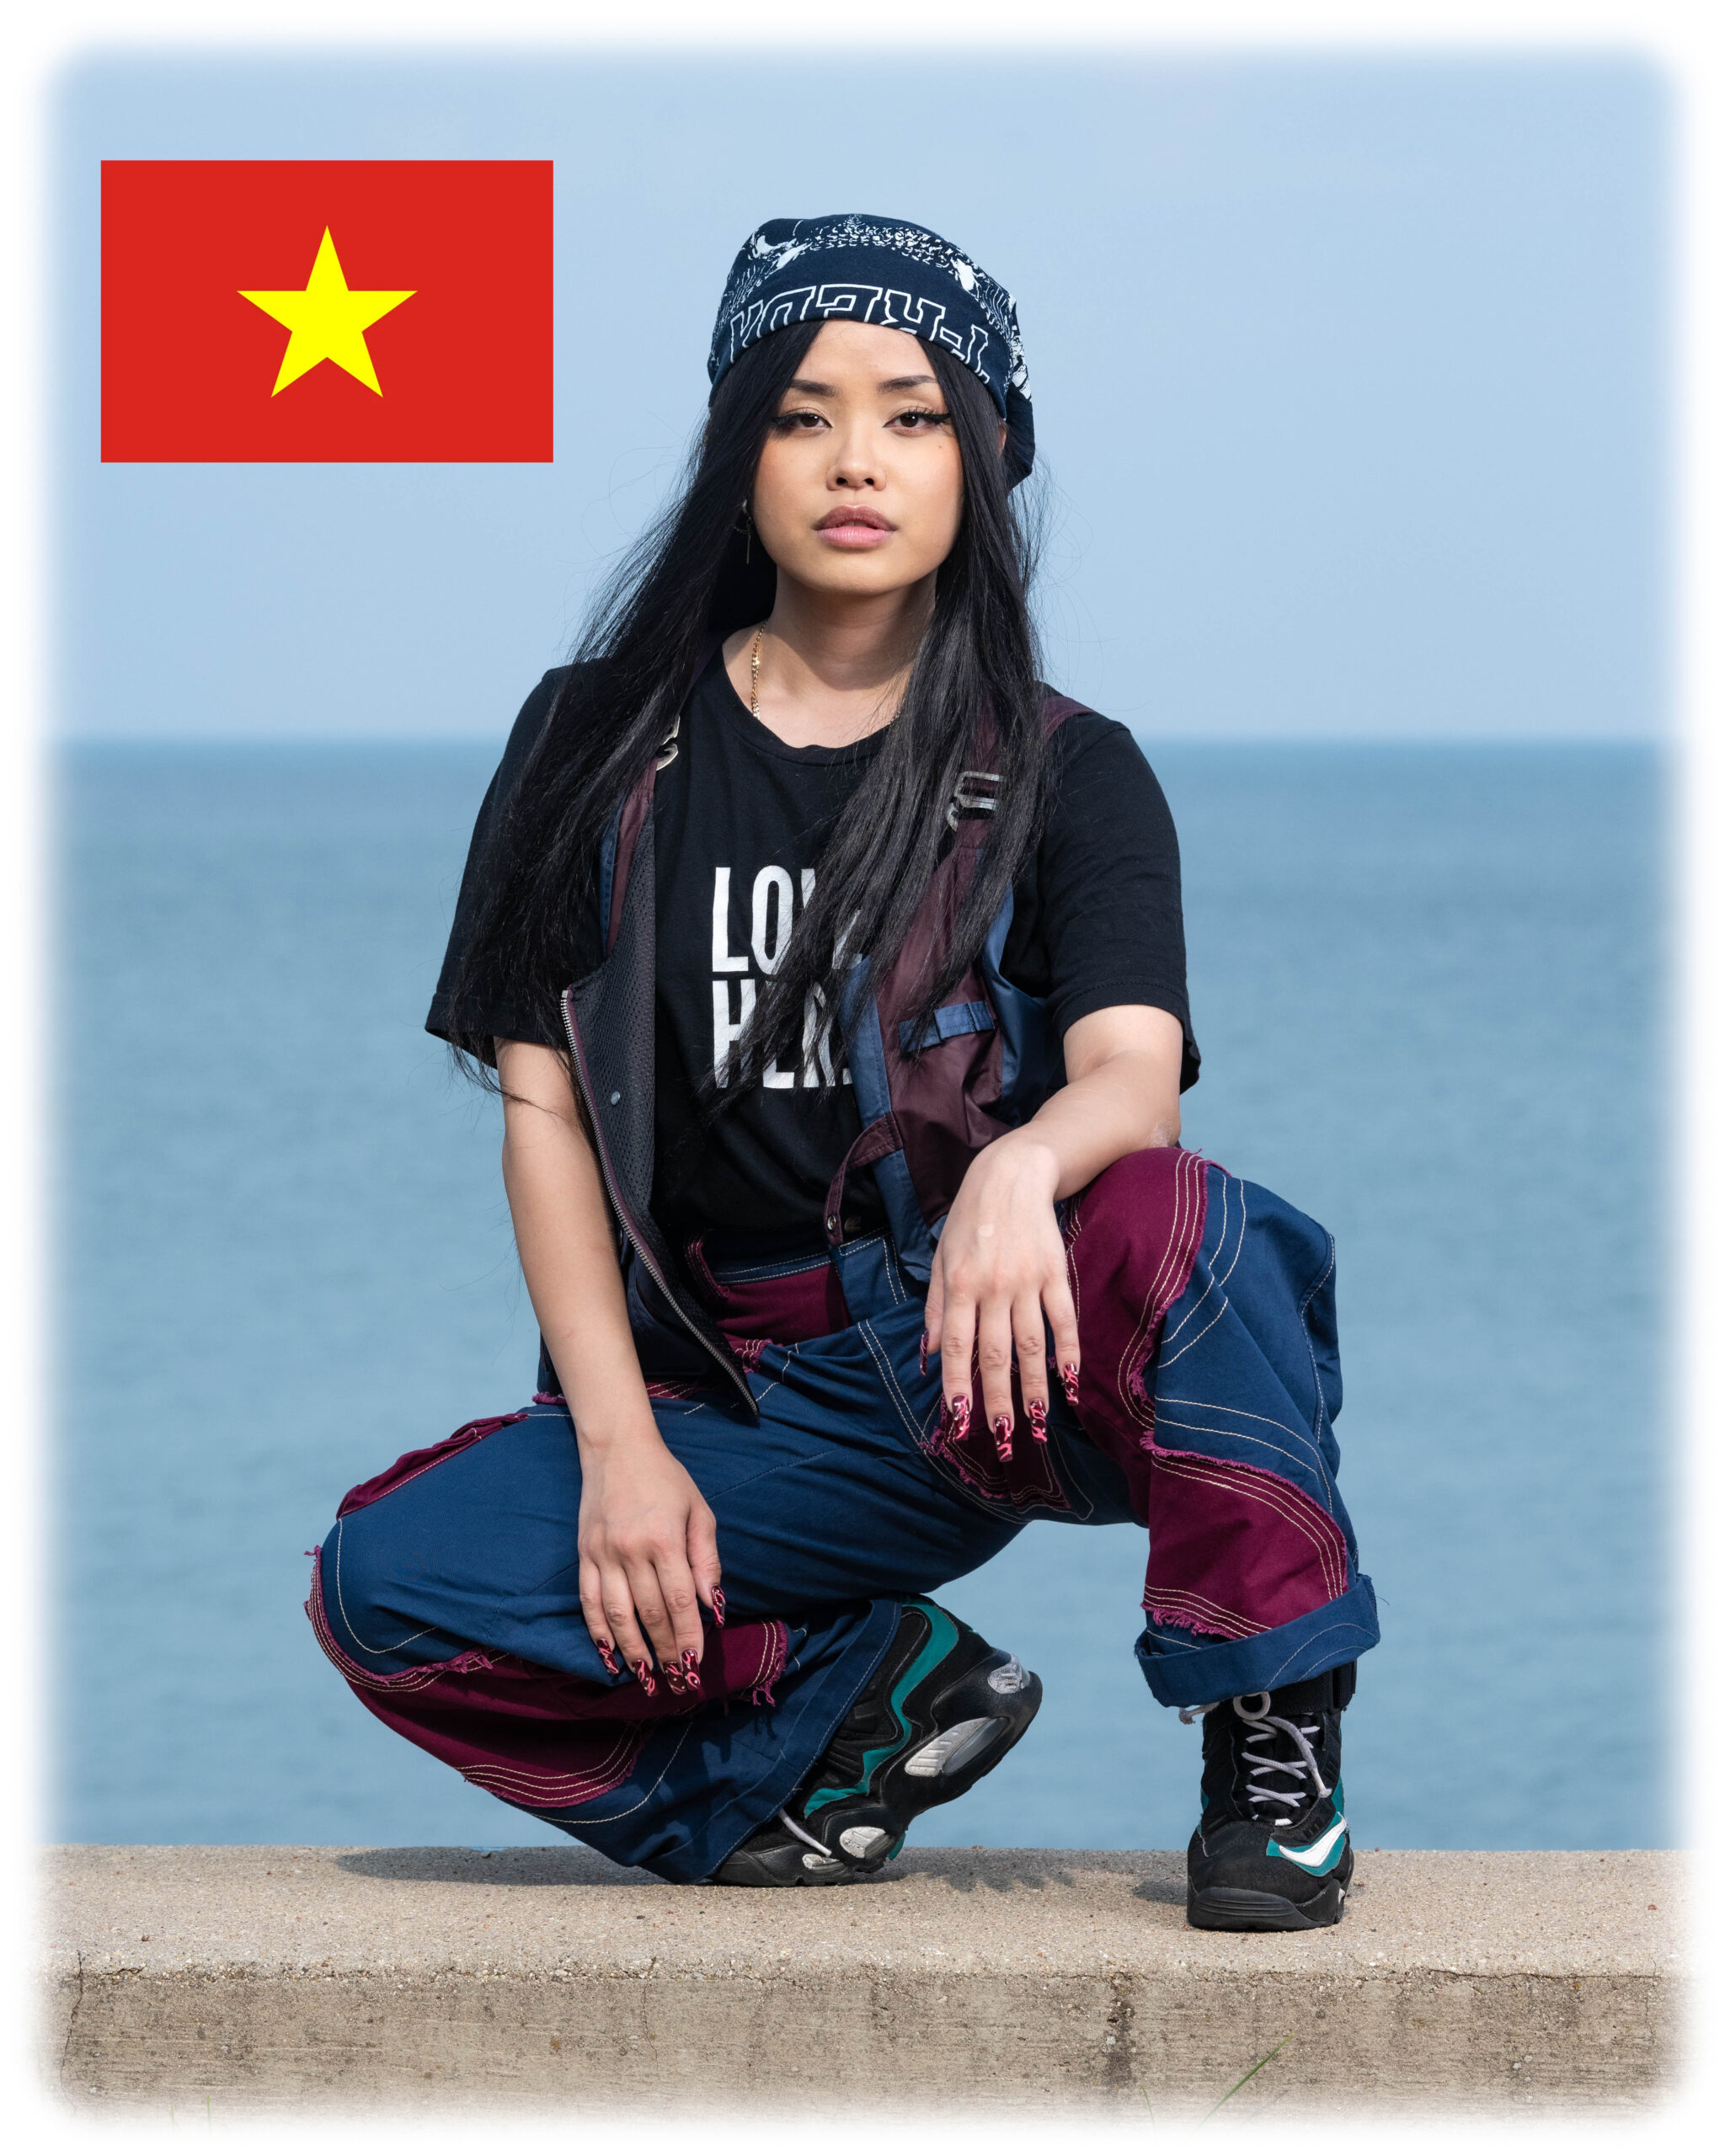 Ep 8: Vietnam – Muun’s Home